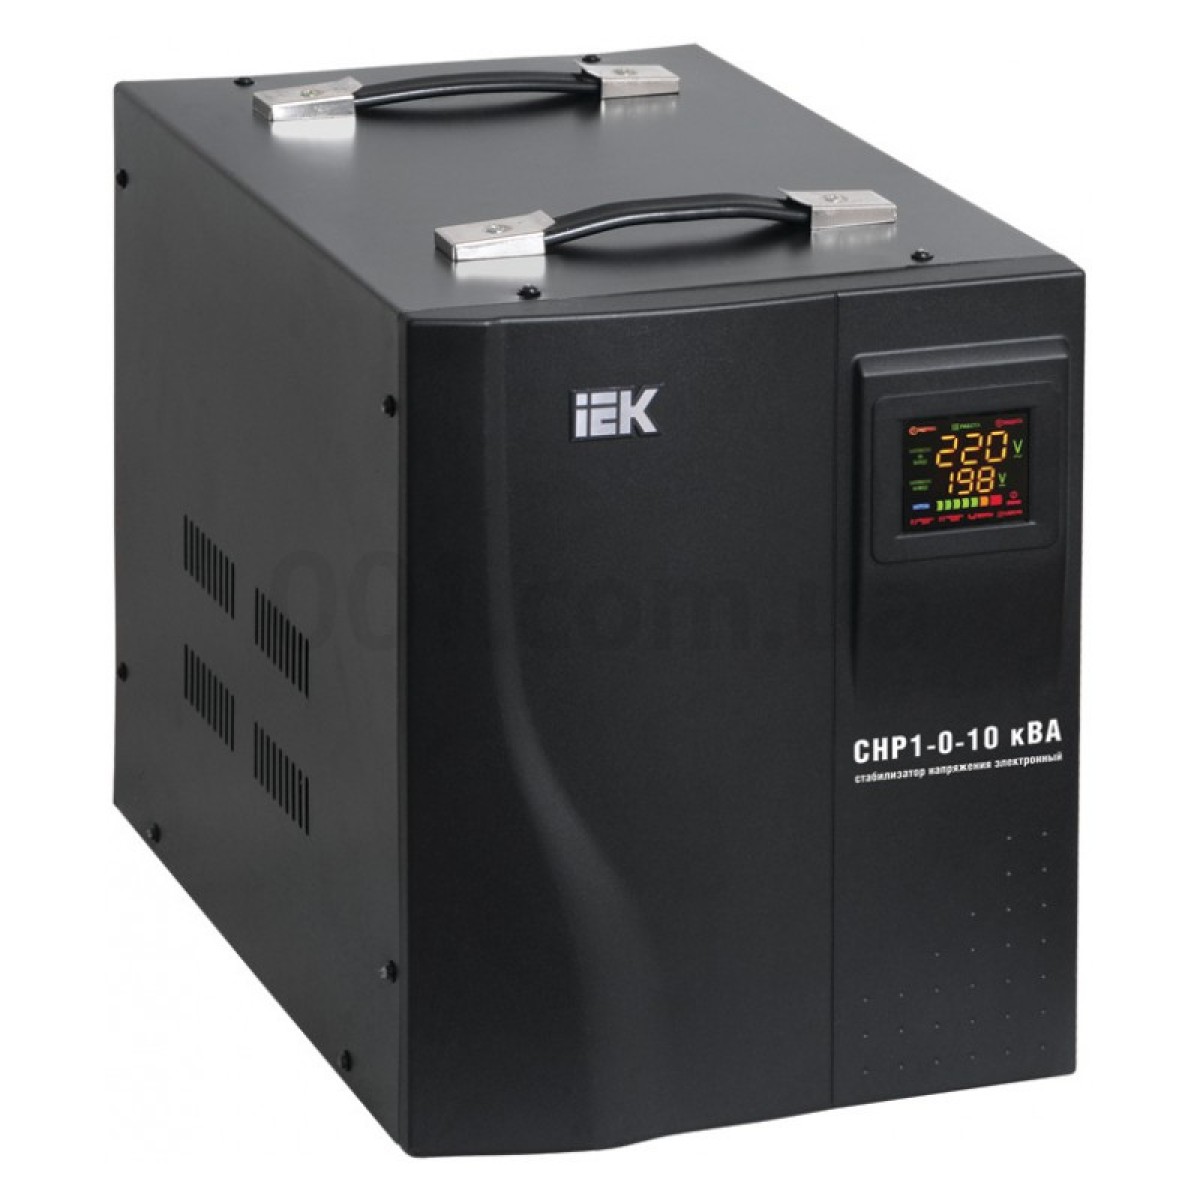 Стабілізатор напруги СНР1-0-10 кВА електронний переносний, IEK 256_256.jpg